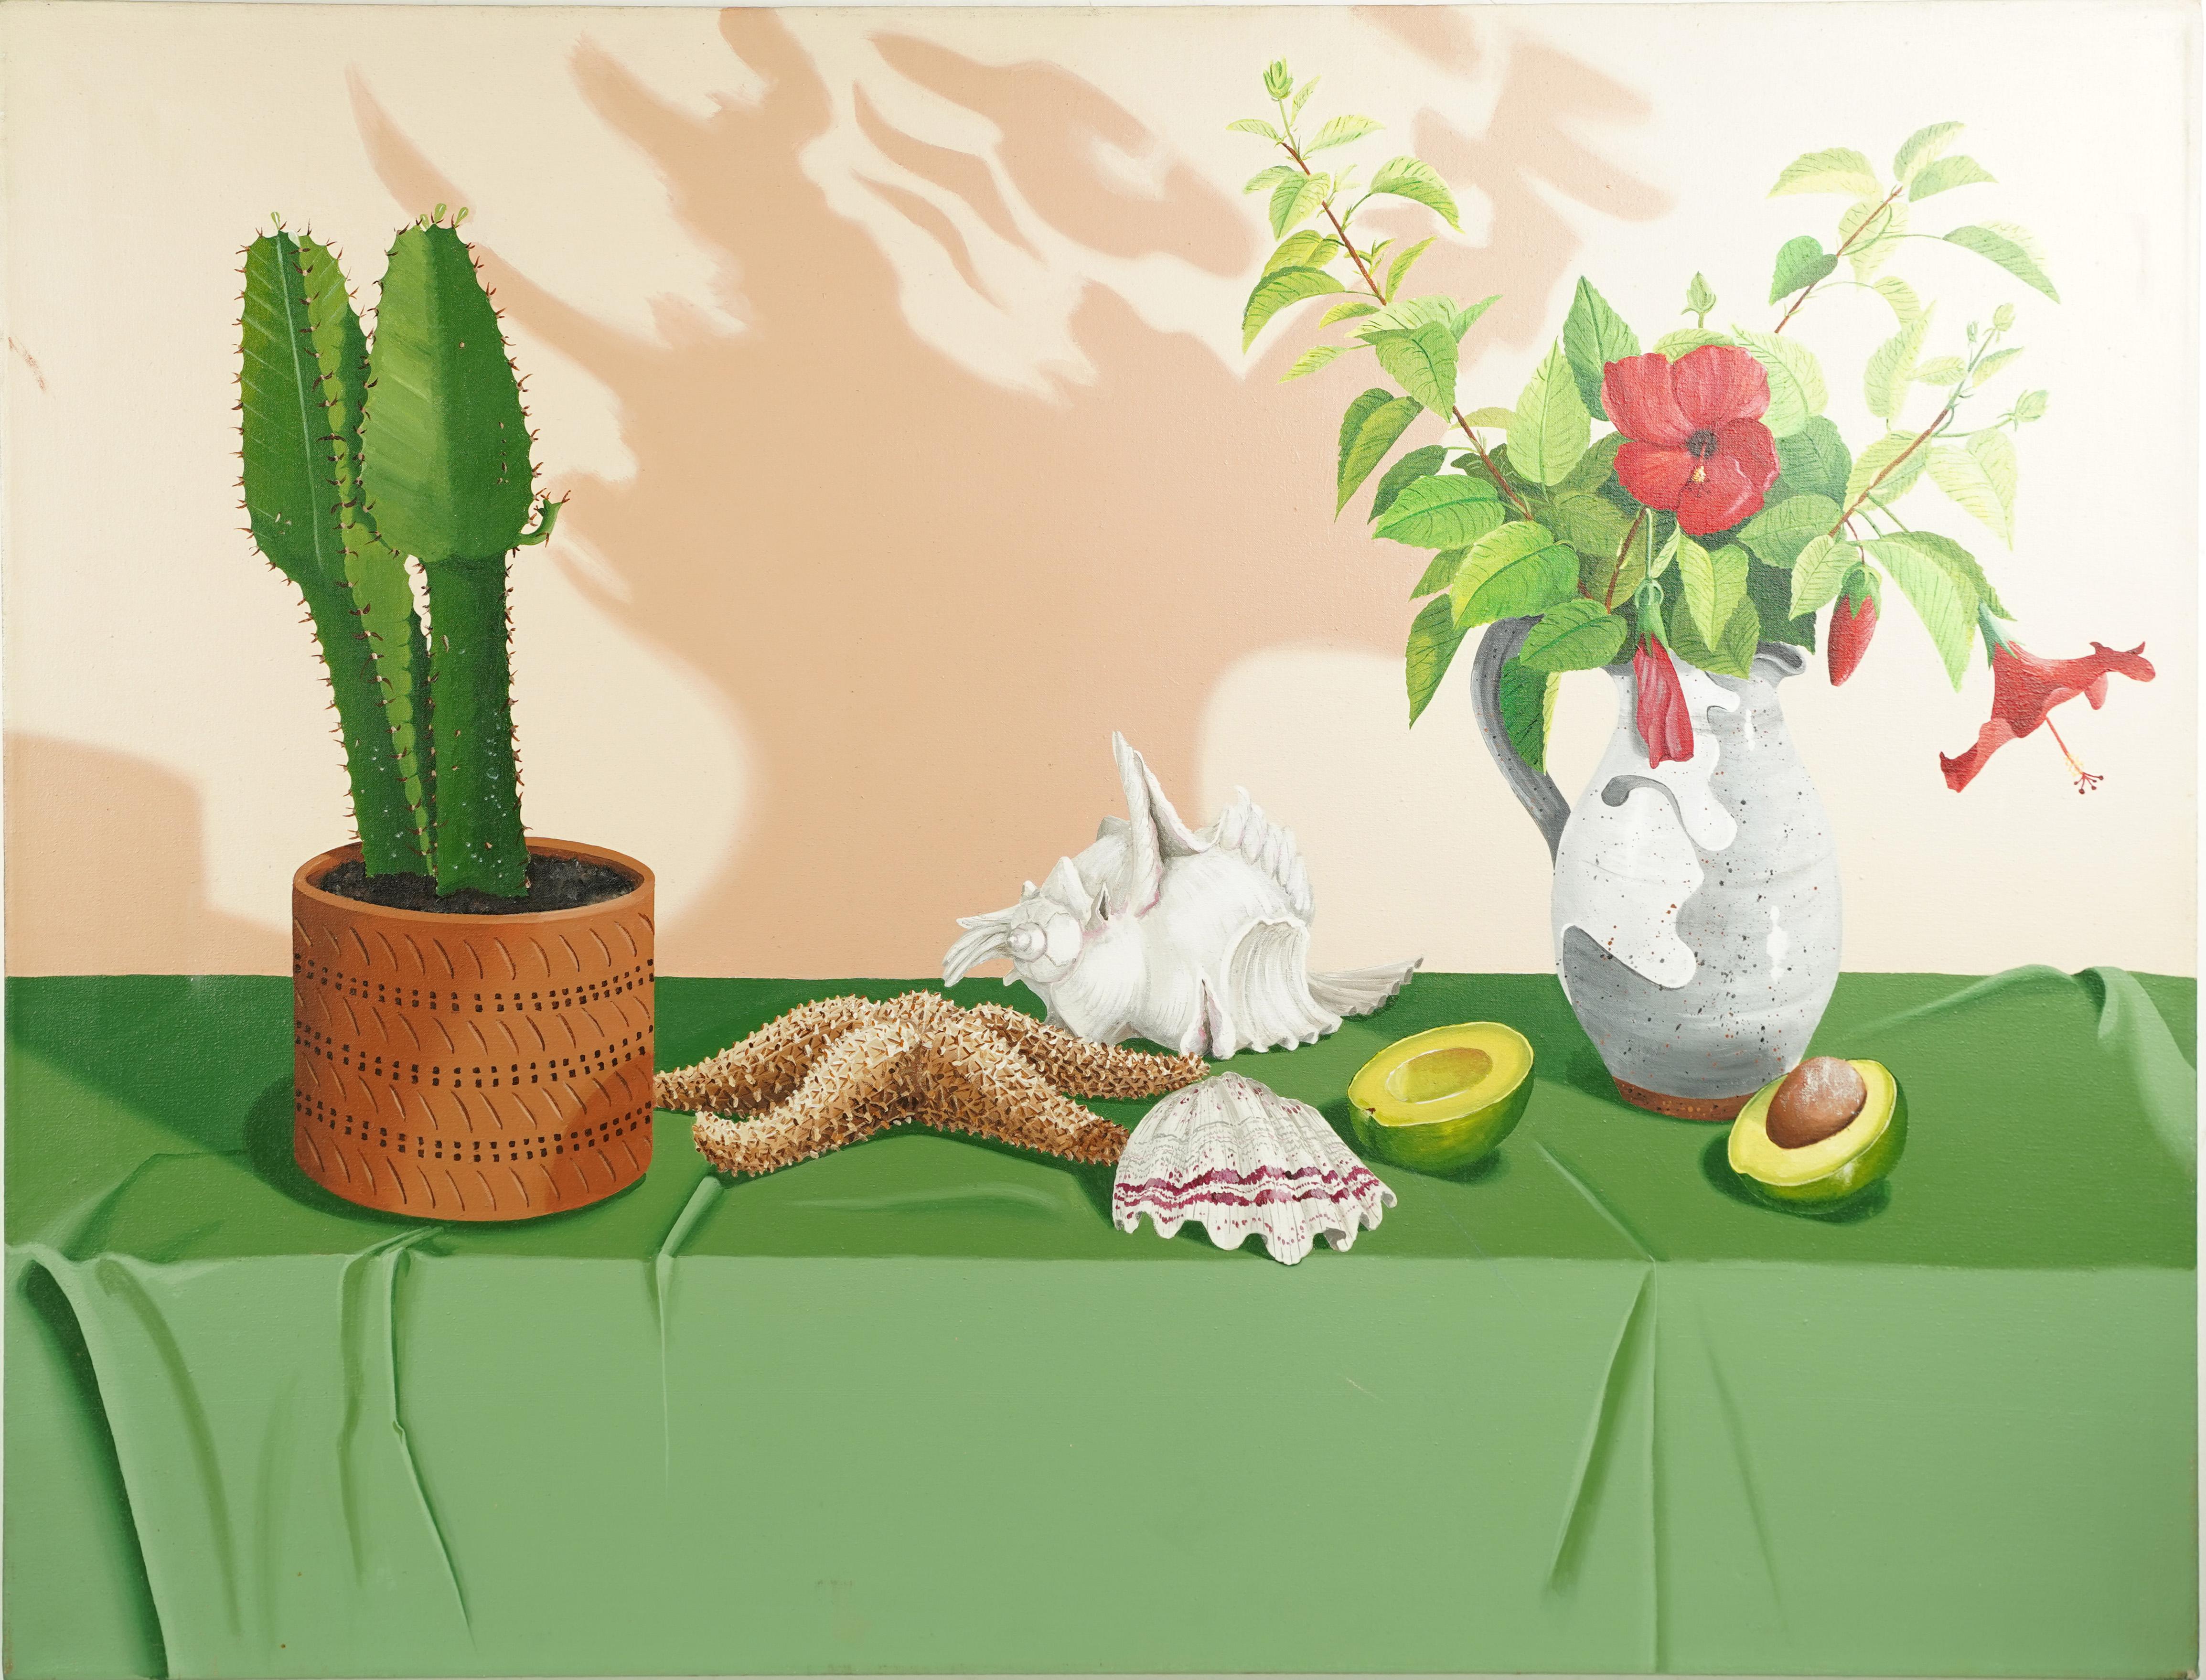 Vieille peinture photoréaliste grandeur nature morte Cactus Avocado signée Southwest